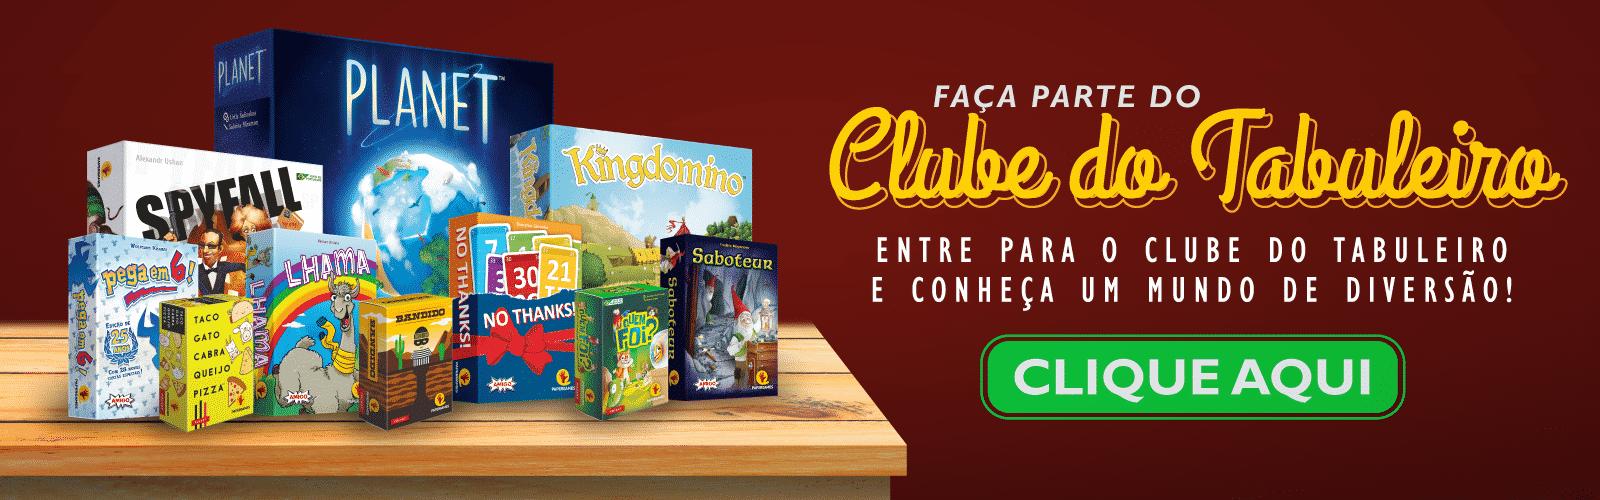 https://jogos.papergames.com.br/clube-do-tabuleiro